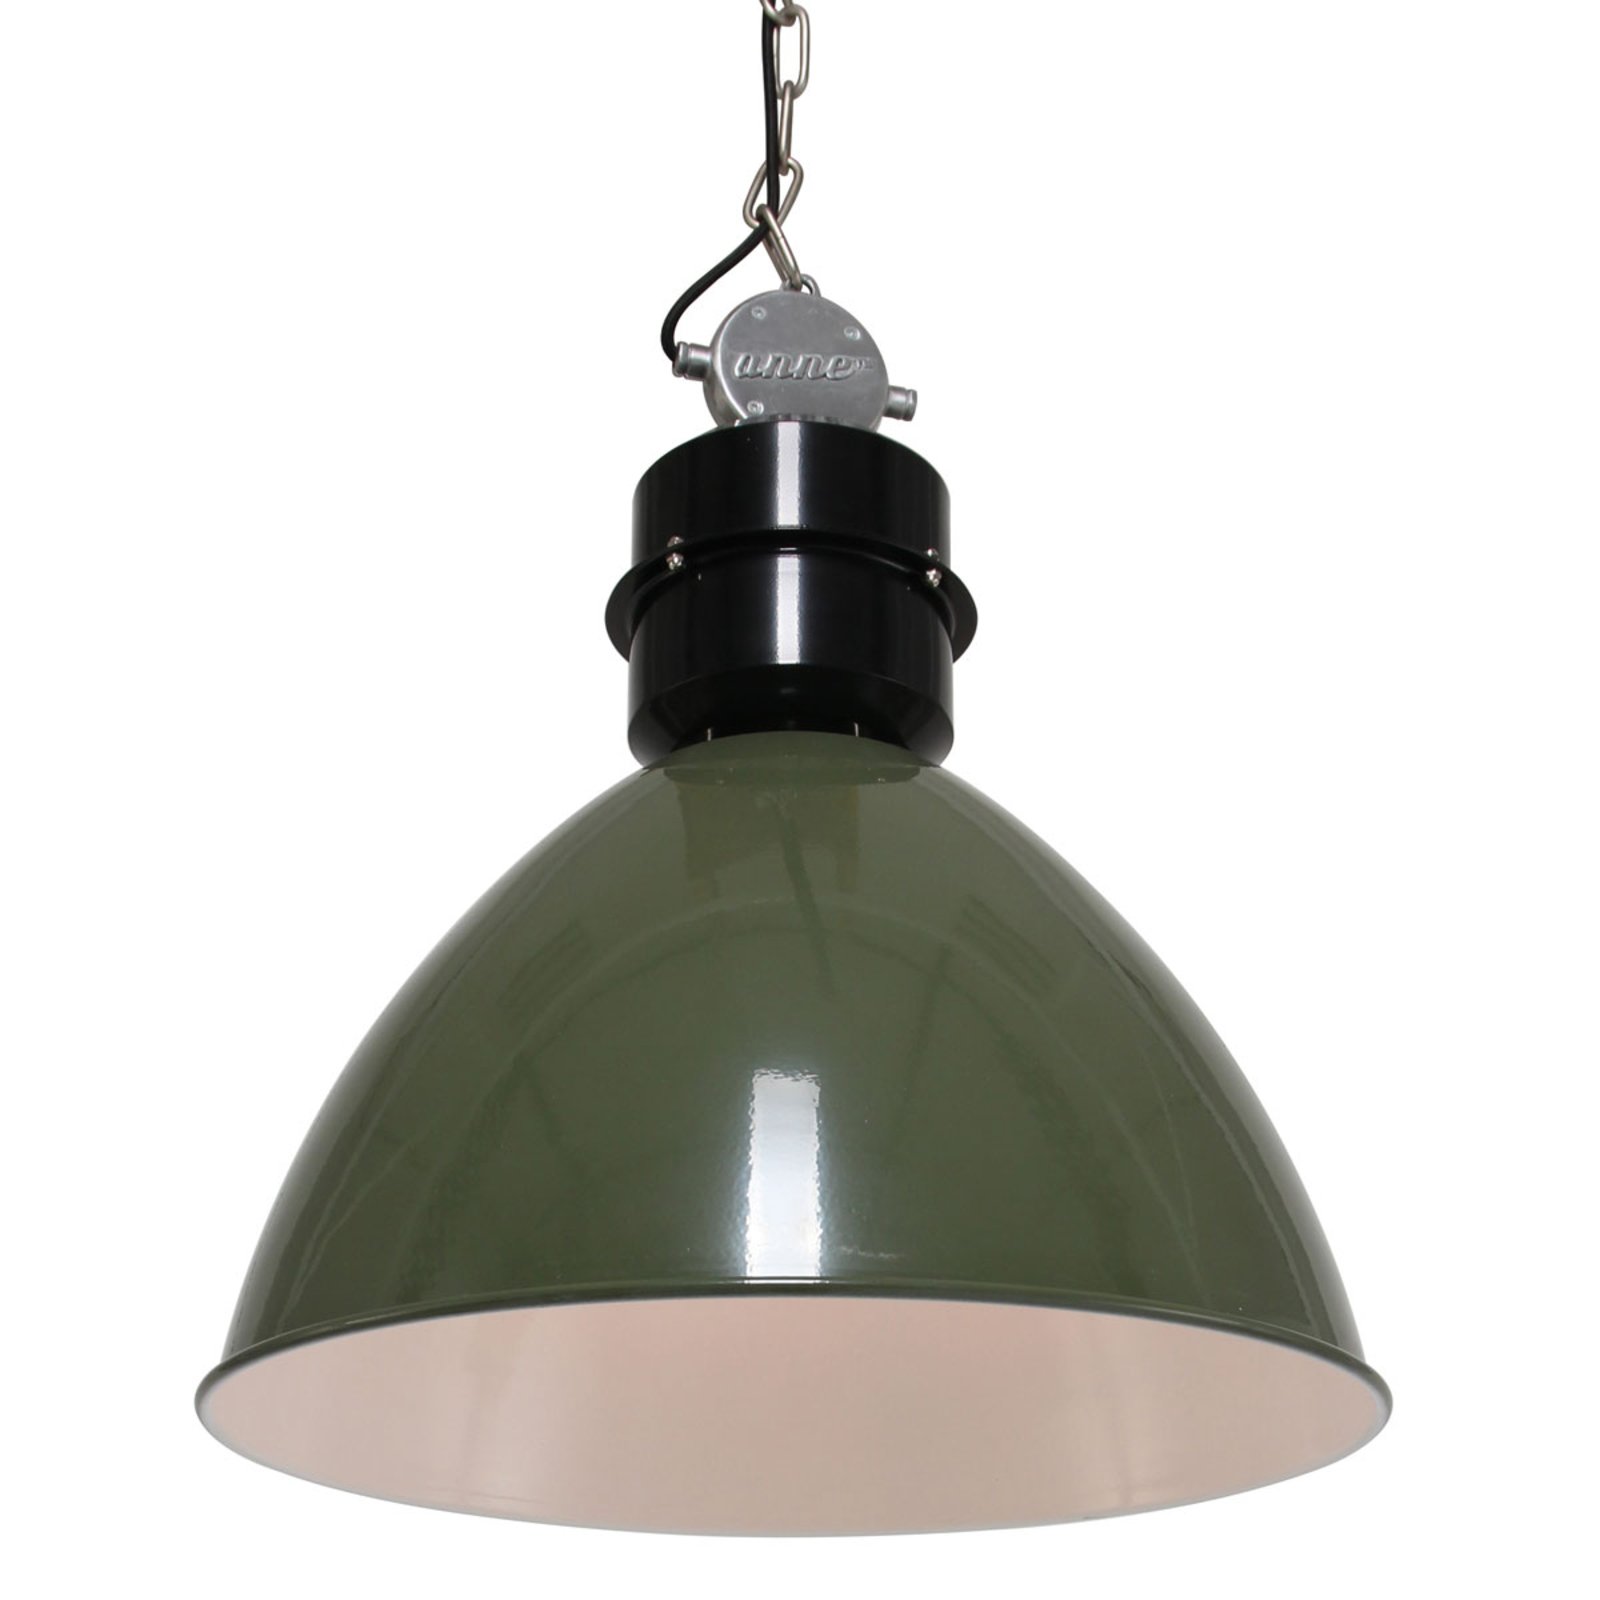 Olive green Frisk pendant light, industrial design